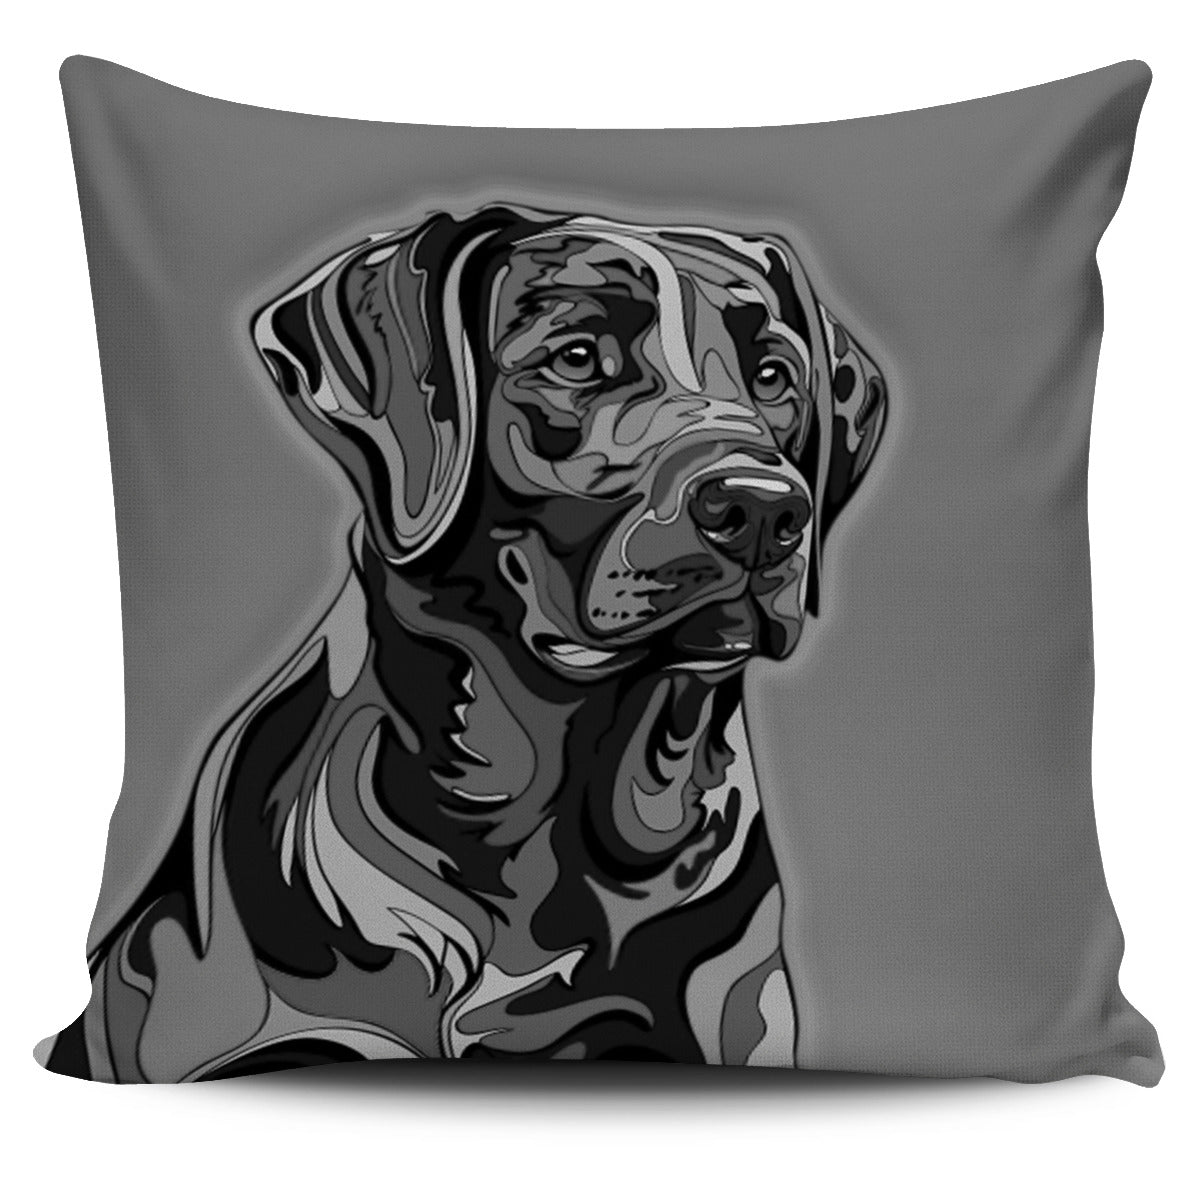 Black & White Dog Pillow Cover